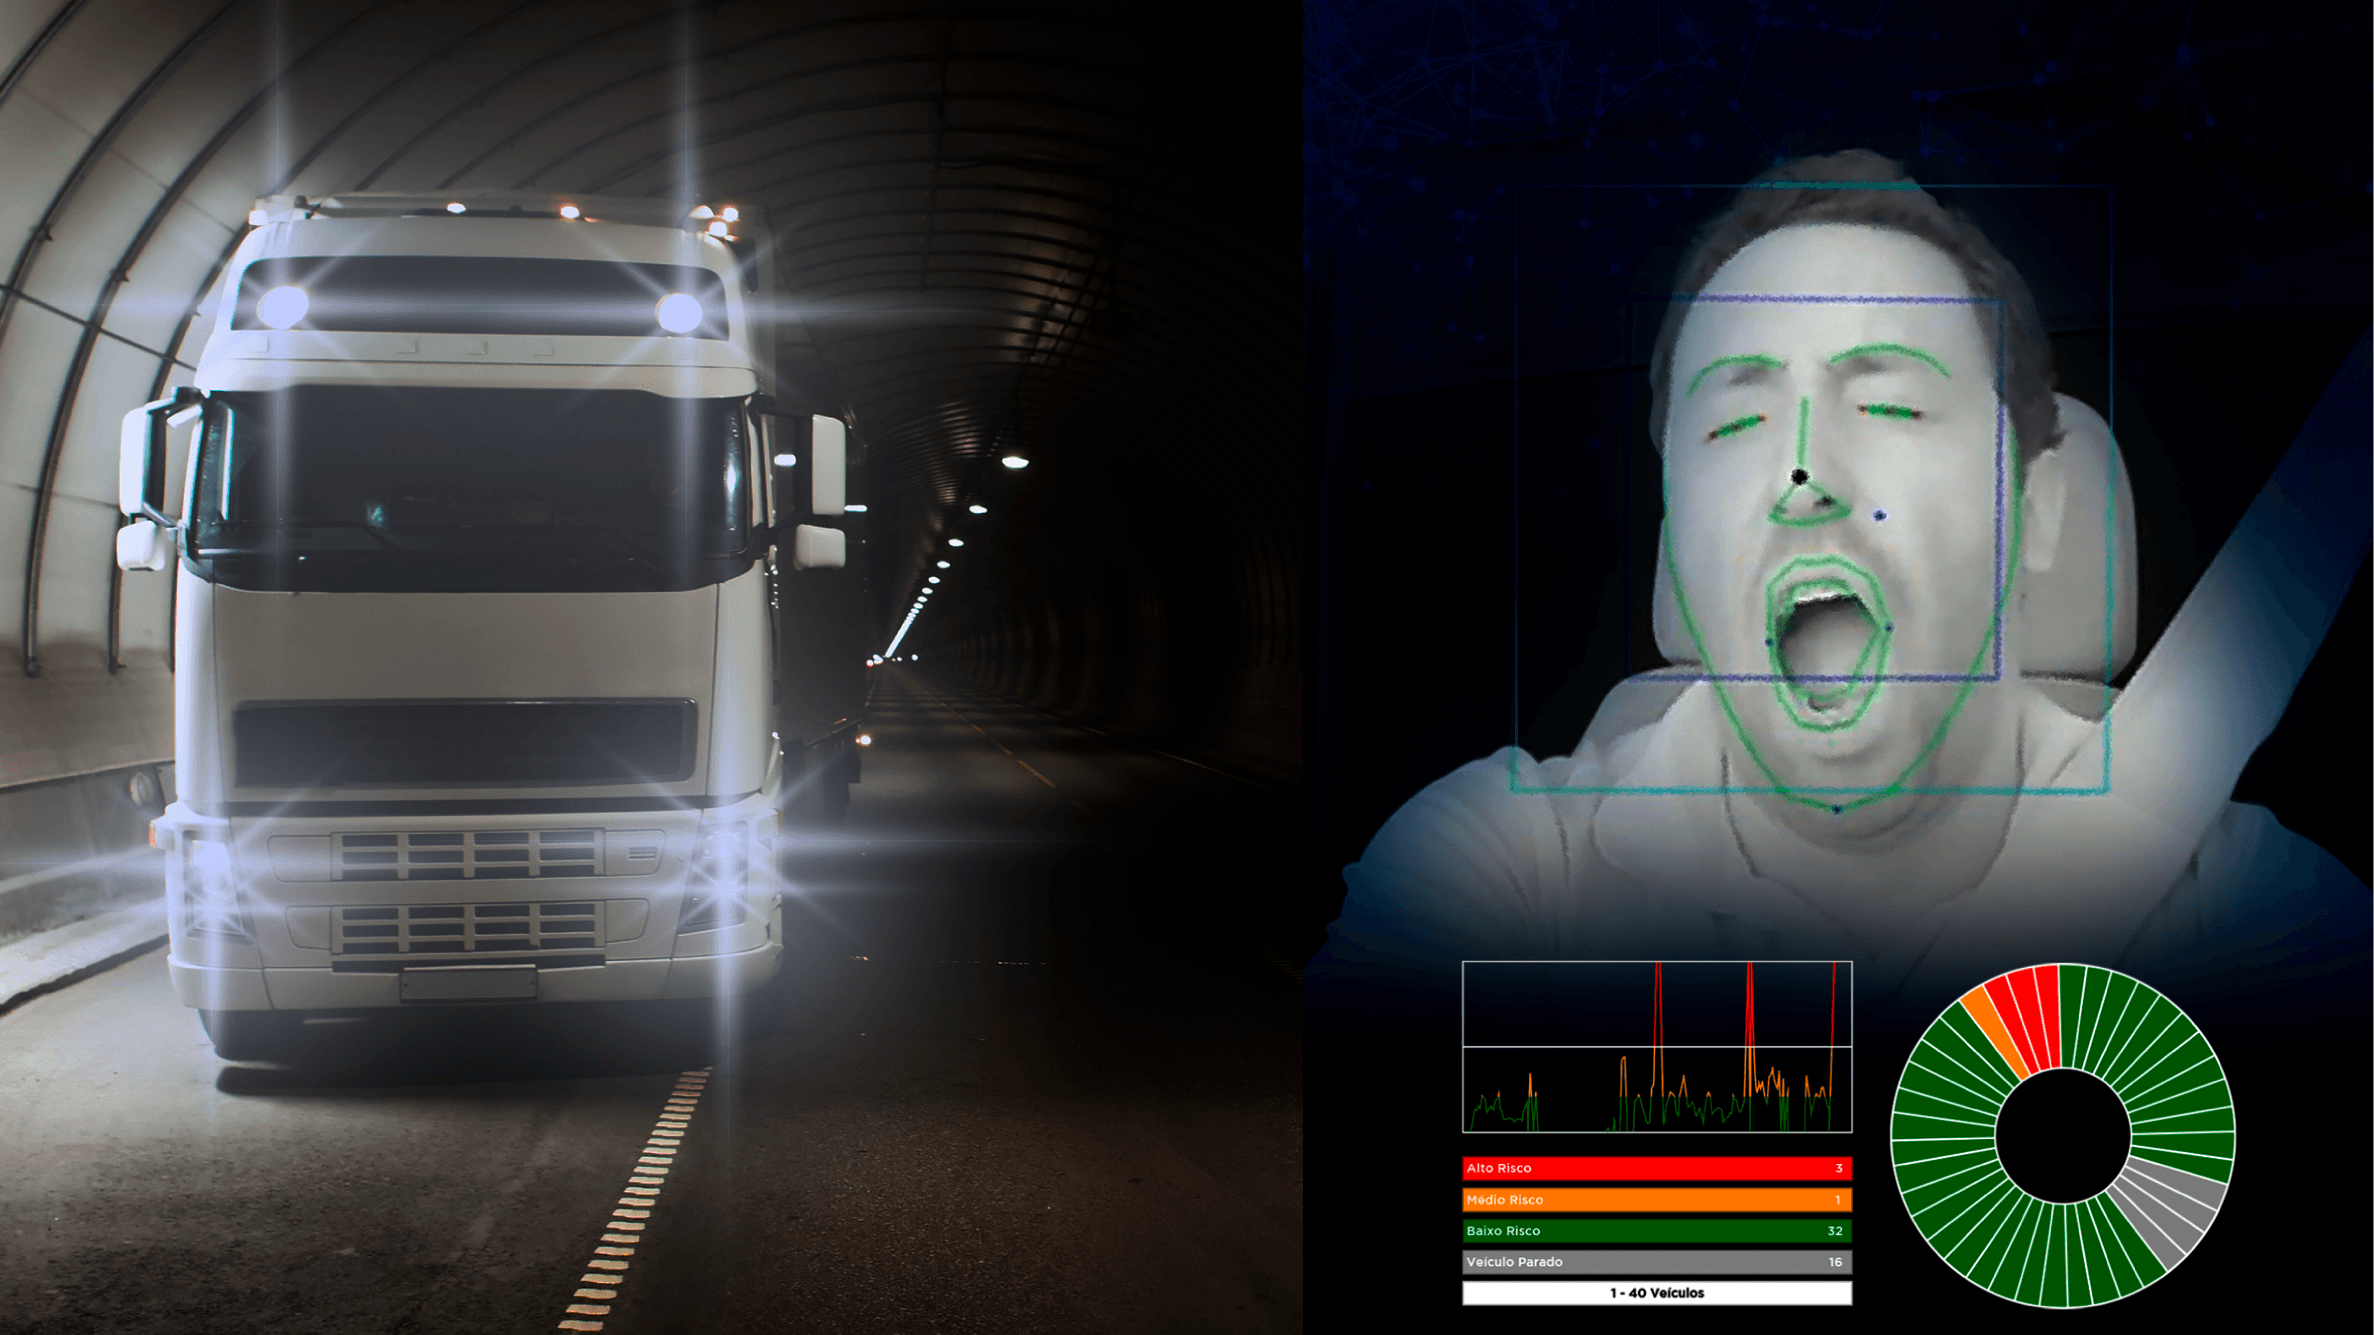 Foto de um caminhão andando e ao lado o motorista sendo gravado bocejando.